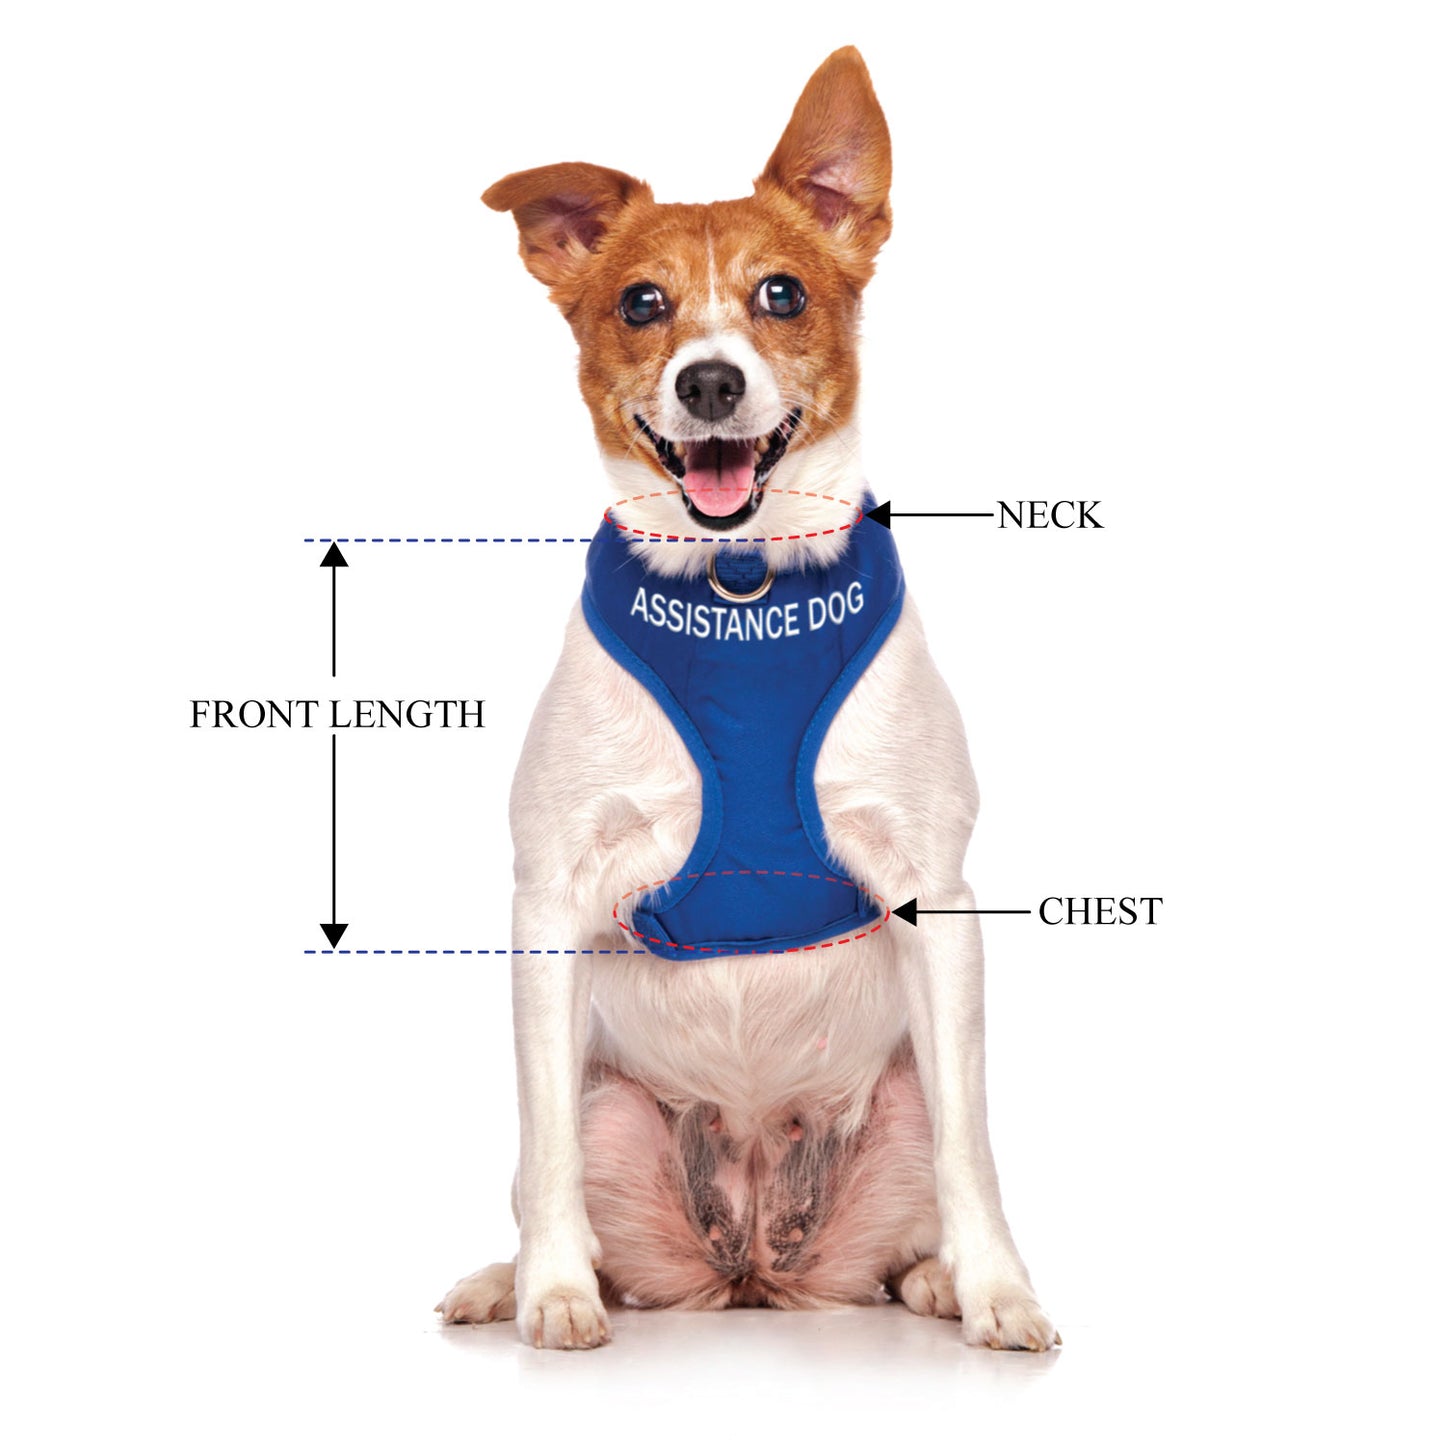 ASSISTANCE DOG - Small adjustable Vest Harness